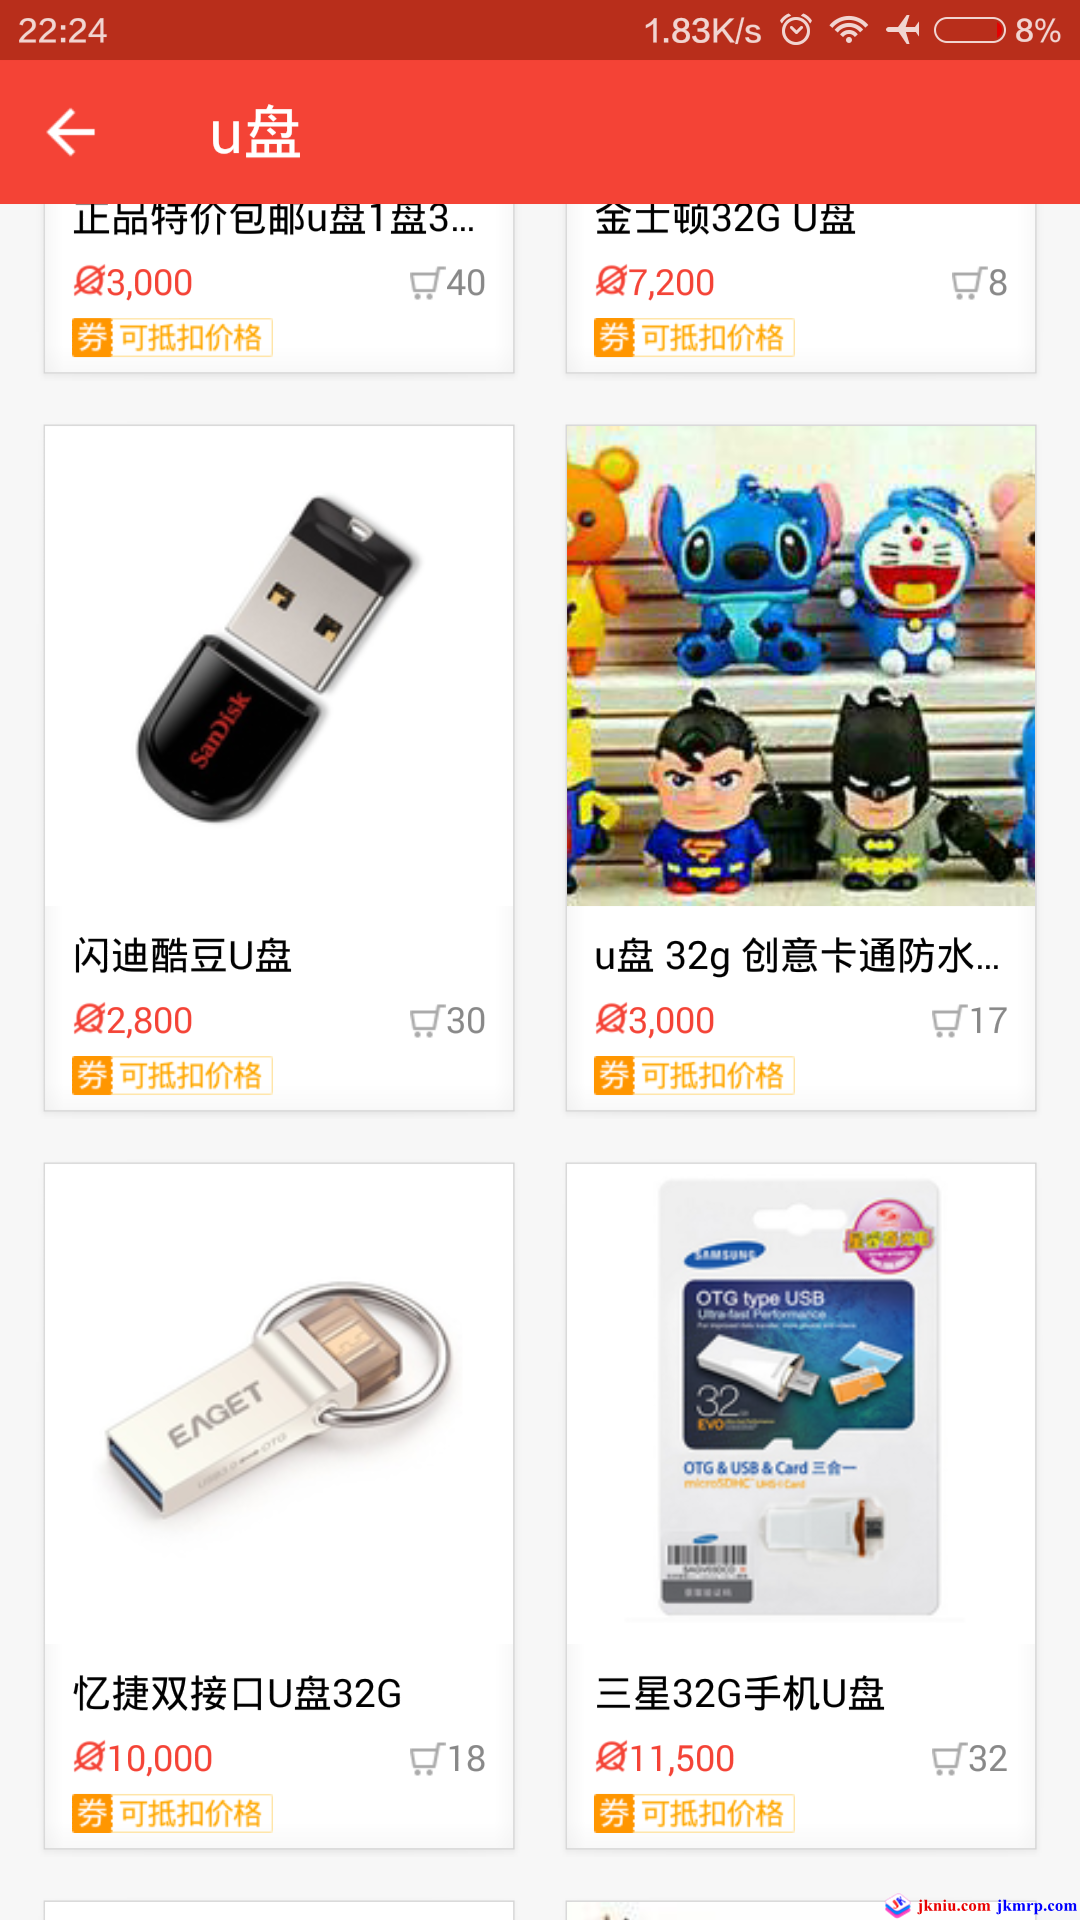 screenshot_com.qianwang.qianbao_2015-10-02-22-24-56